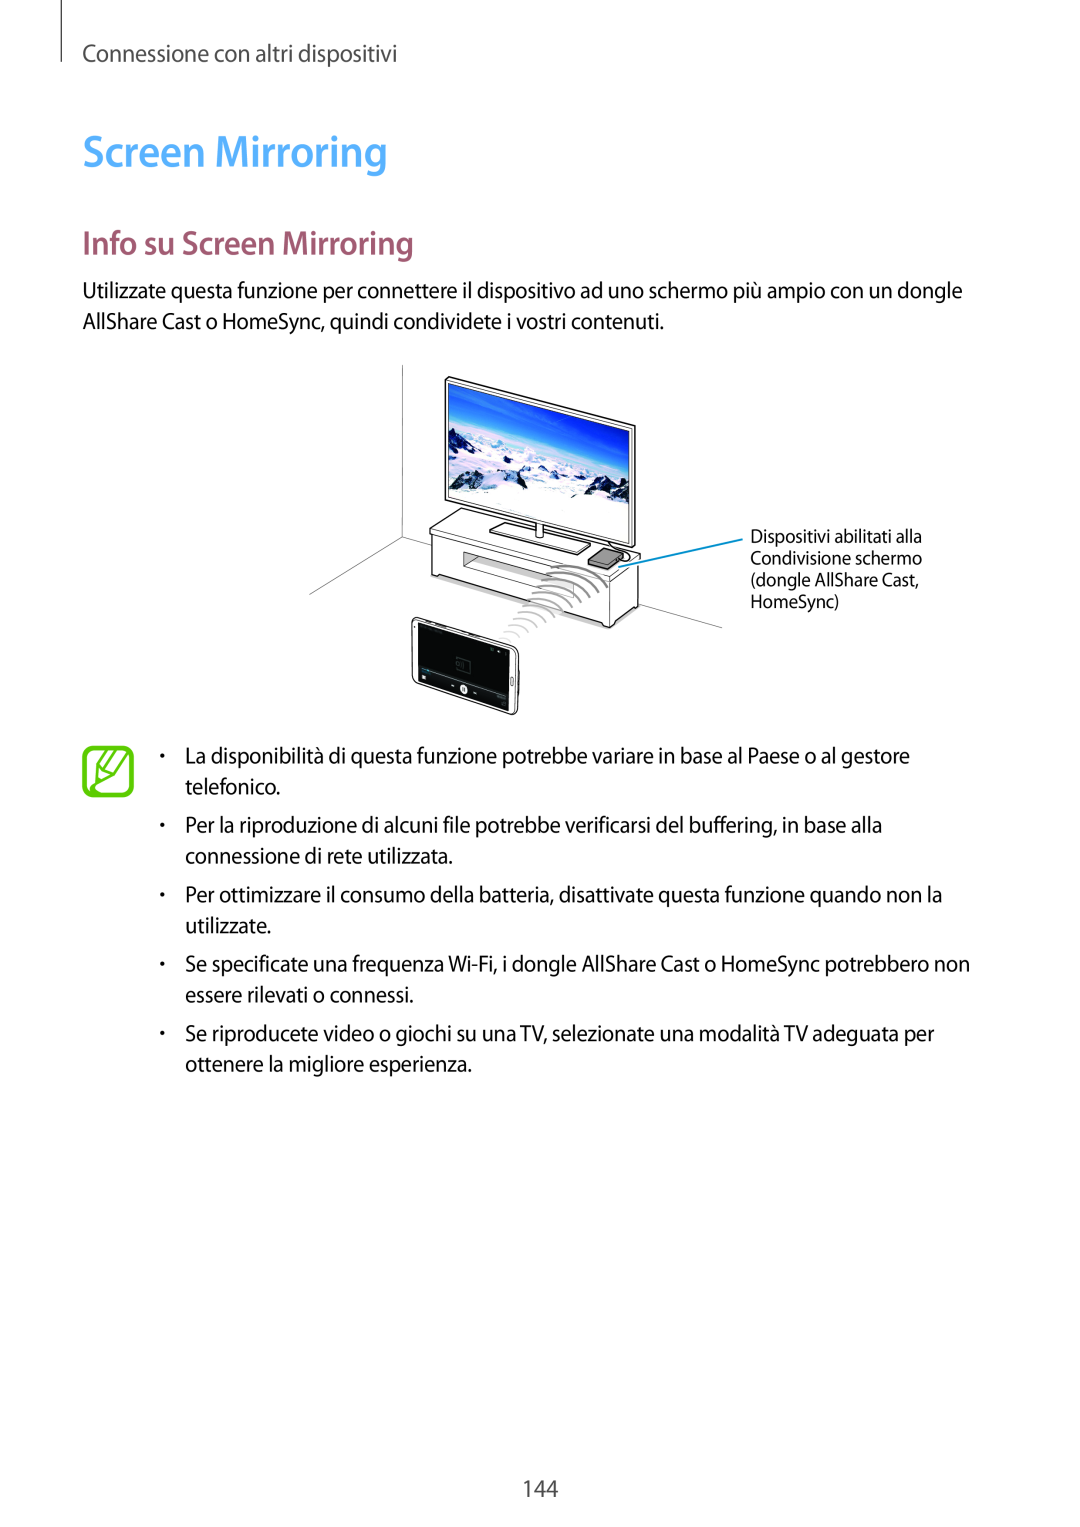 Samsung SM-T700NZWAITV, SM-T700NZWATUR, SM-T700NTSATUR manual Info su Screen Mirroring, Connessione con altri dispositivi 